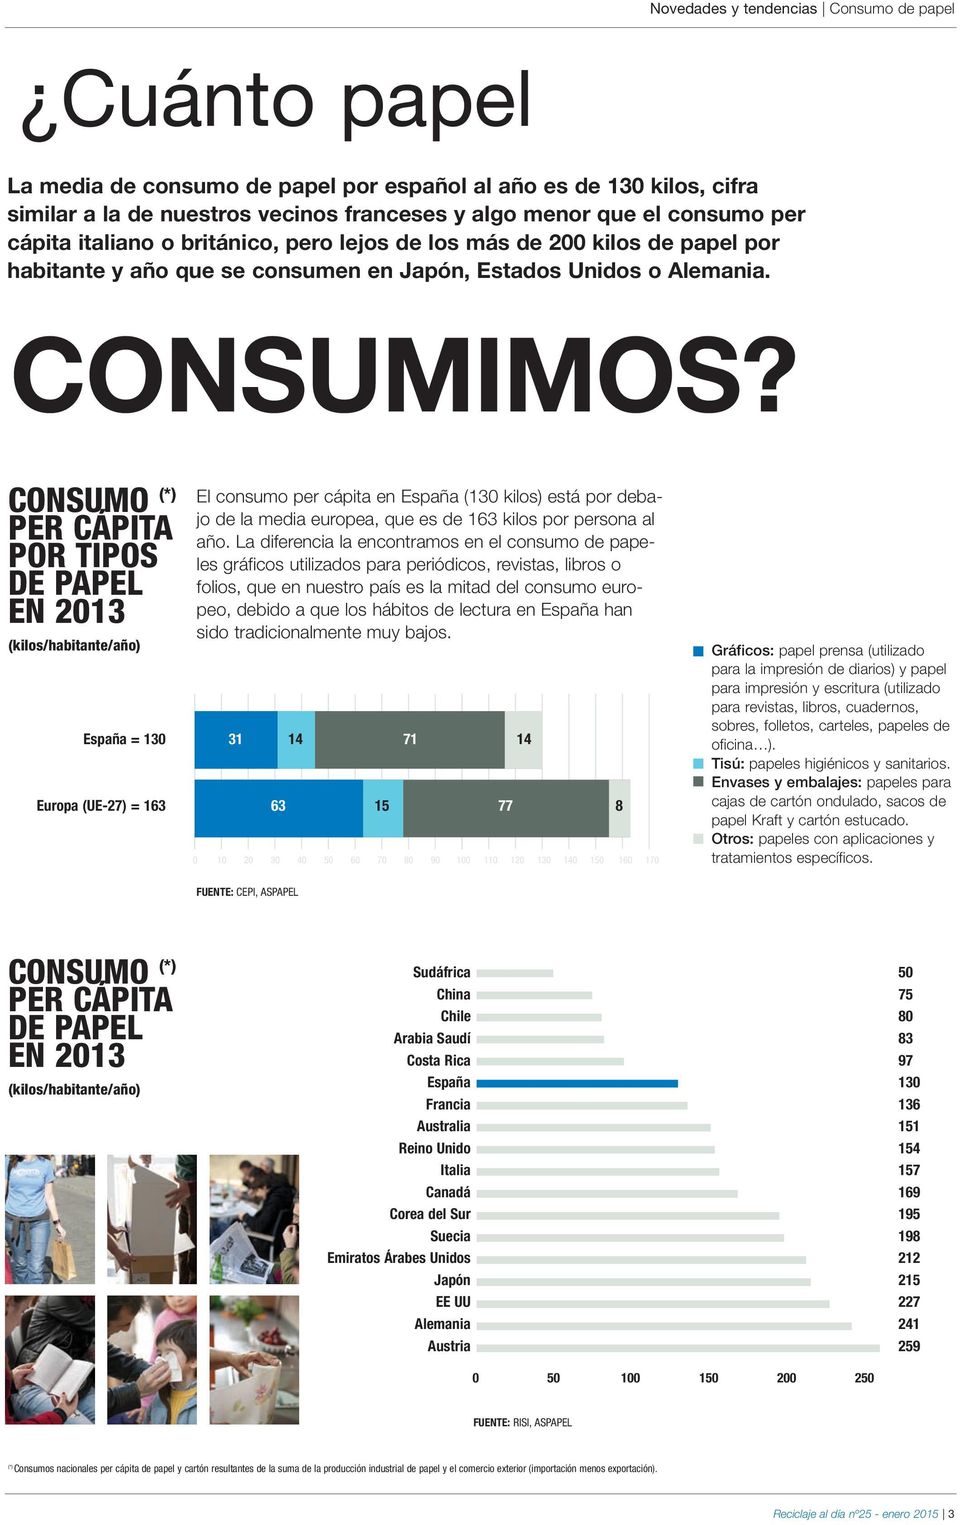 CONSUMO (*) PER CÁPITA POR TIPOS DE PAPEL EN 2013 (kilos/habitante/año) El consumo per cápita en España (130 kilos) está por debajo de la media europea, que es de 163 kilos por persona al año.